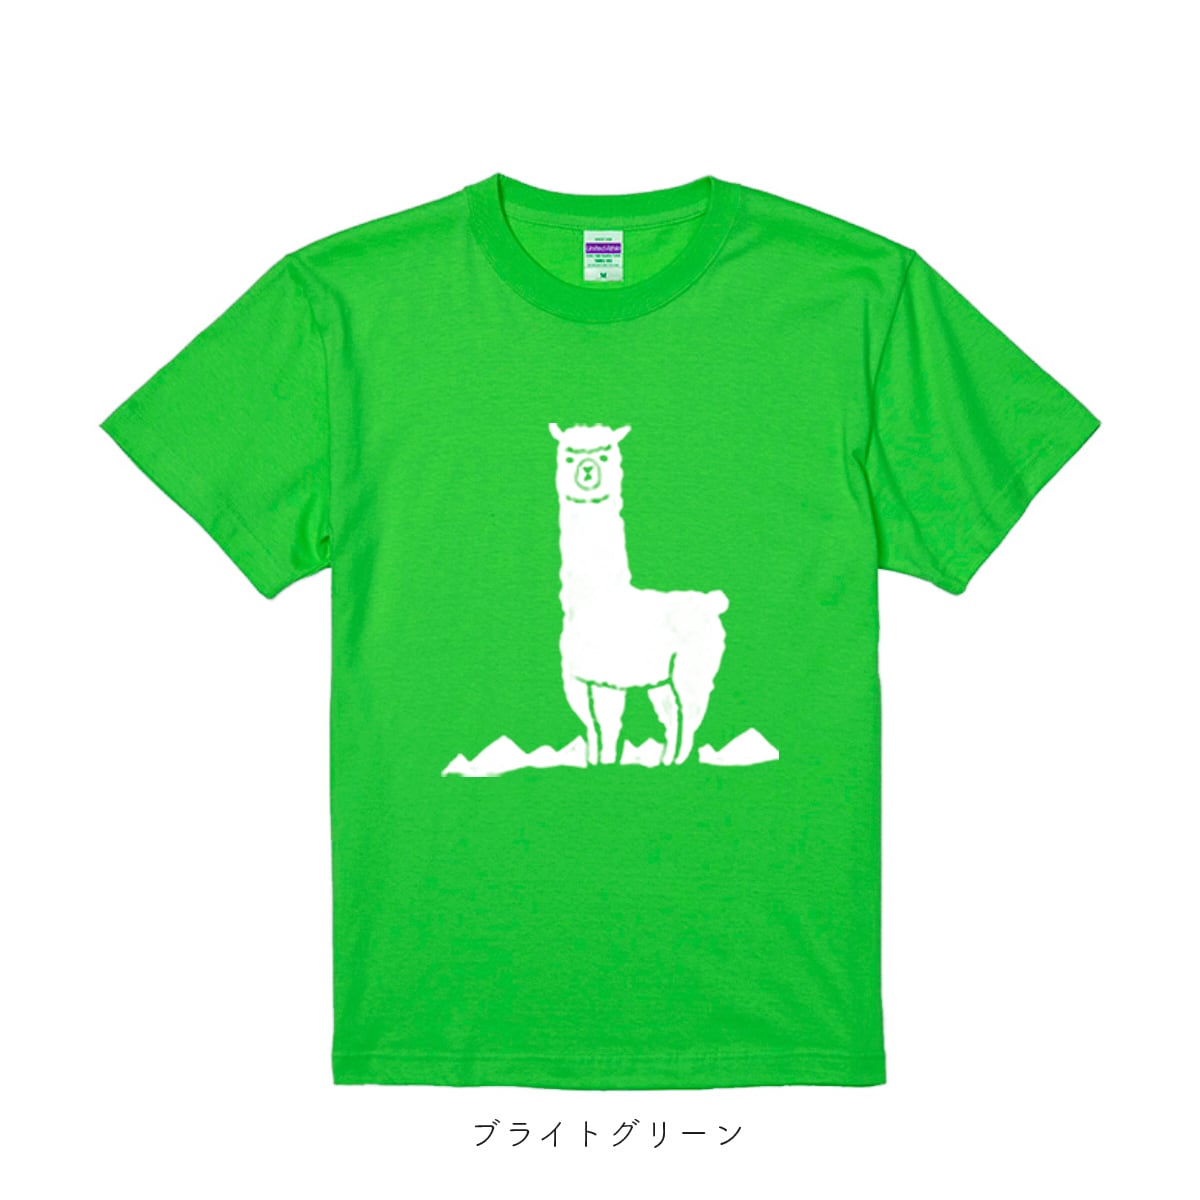 山とアルパカ Tシャツ 【キッズサイズ】 アルパカ雑貨sunokko design online store